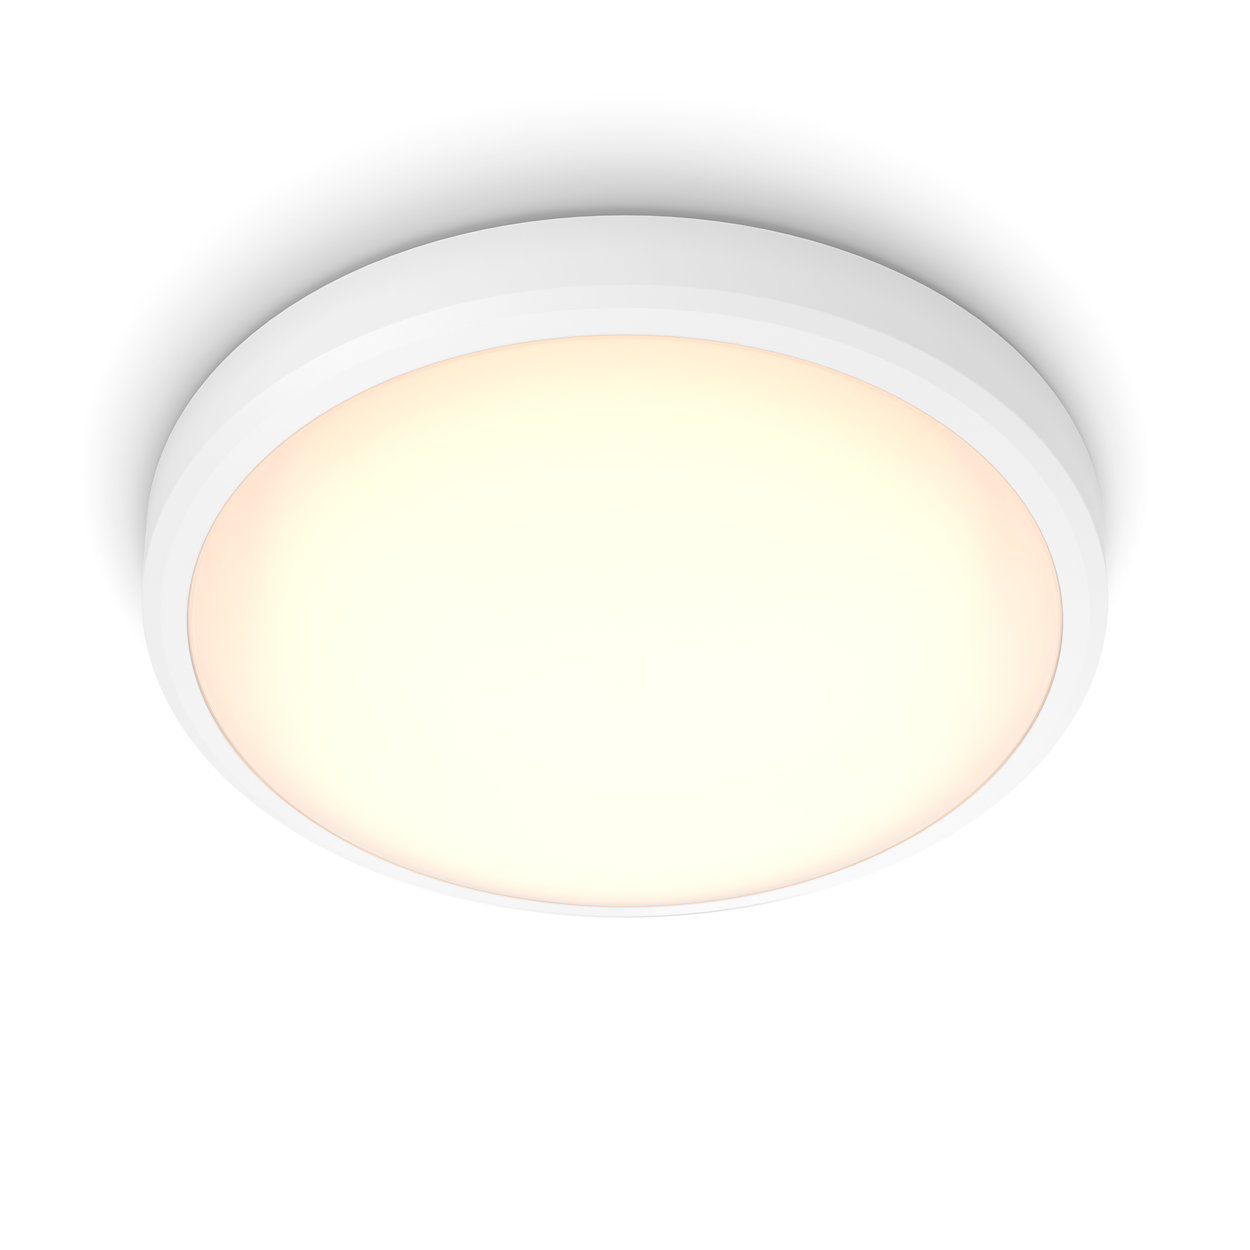 Luz LED confortável para os olhos